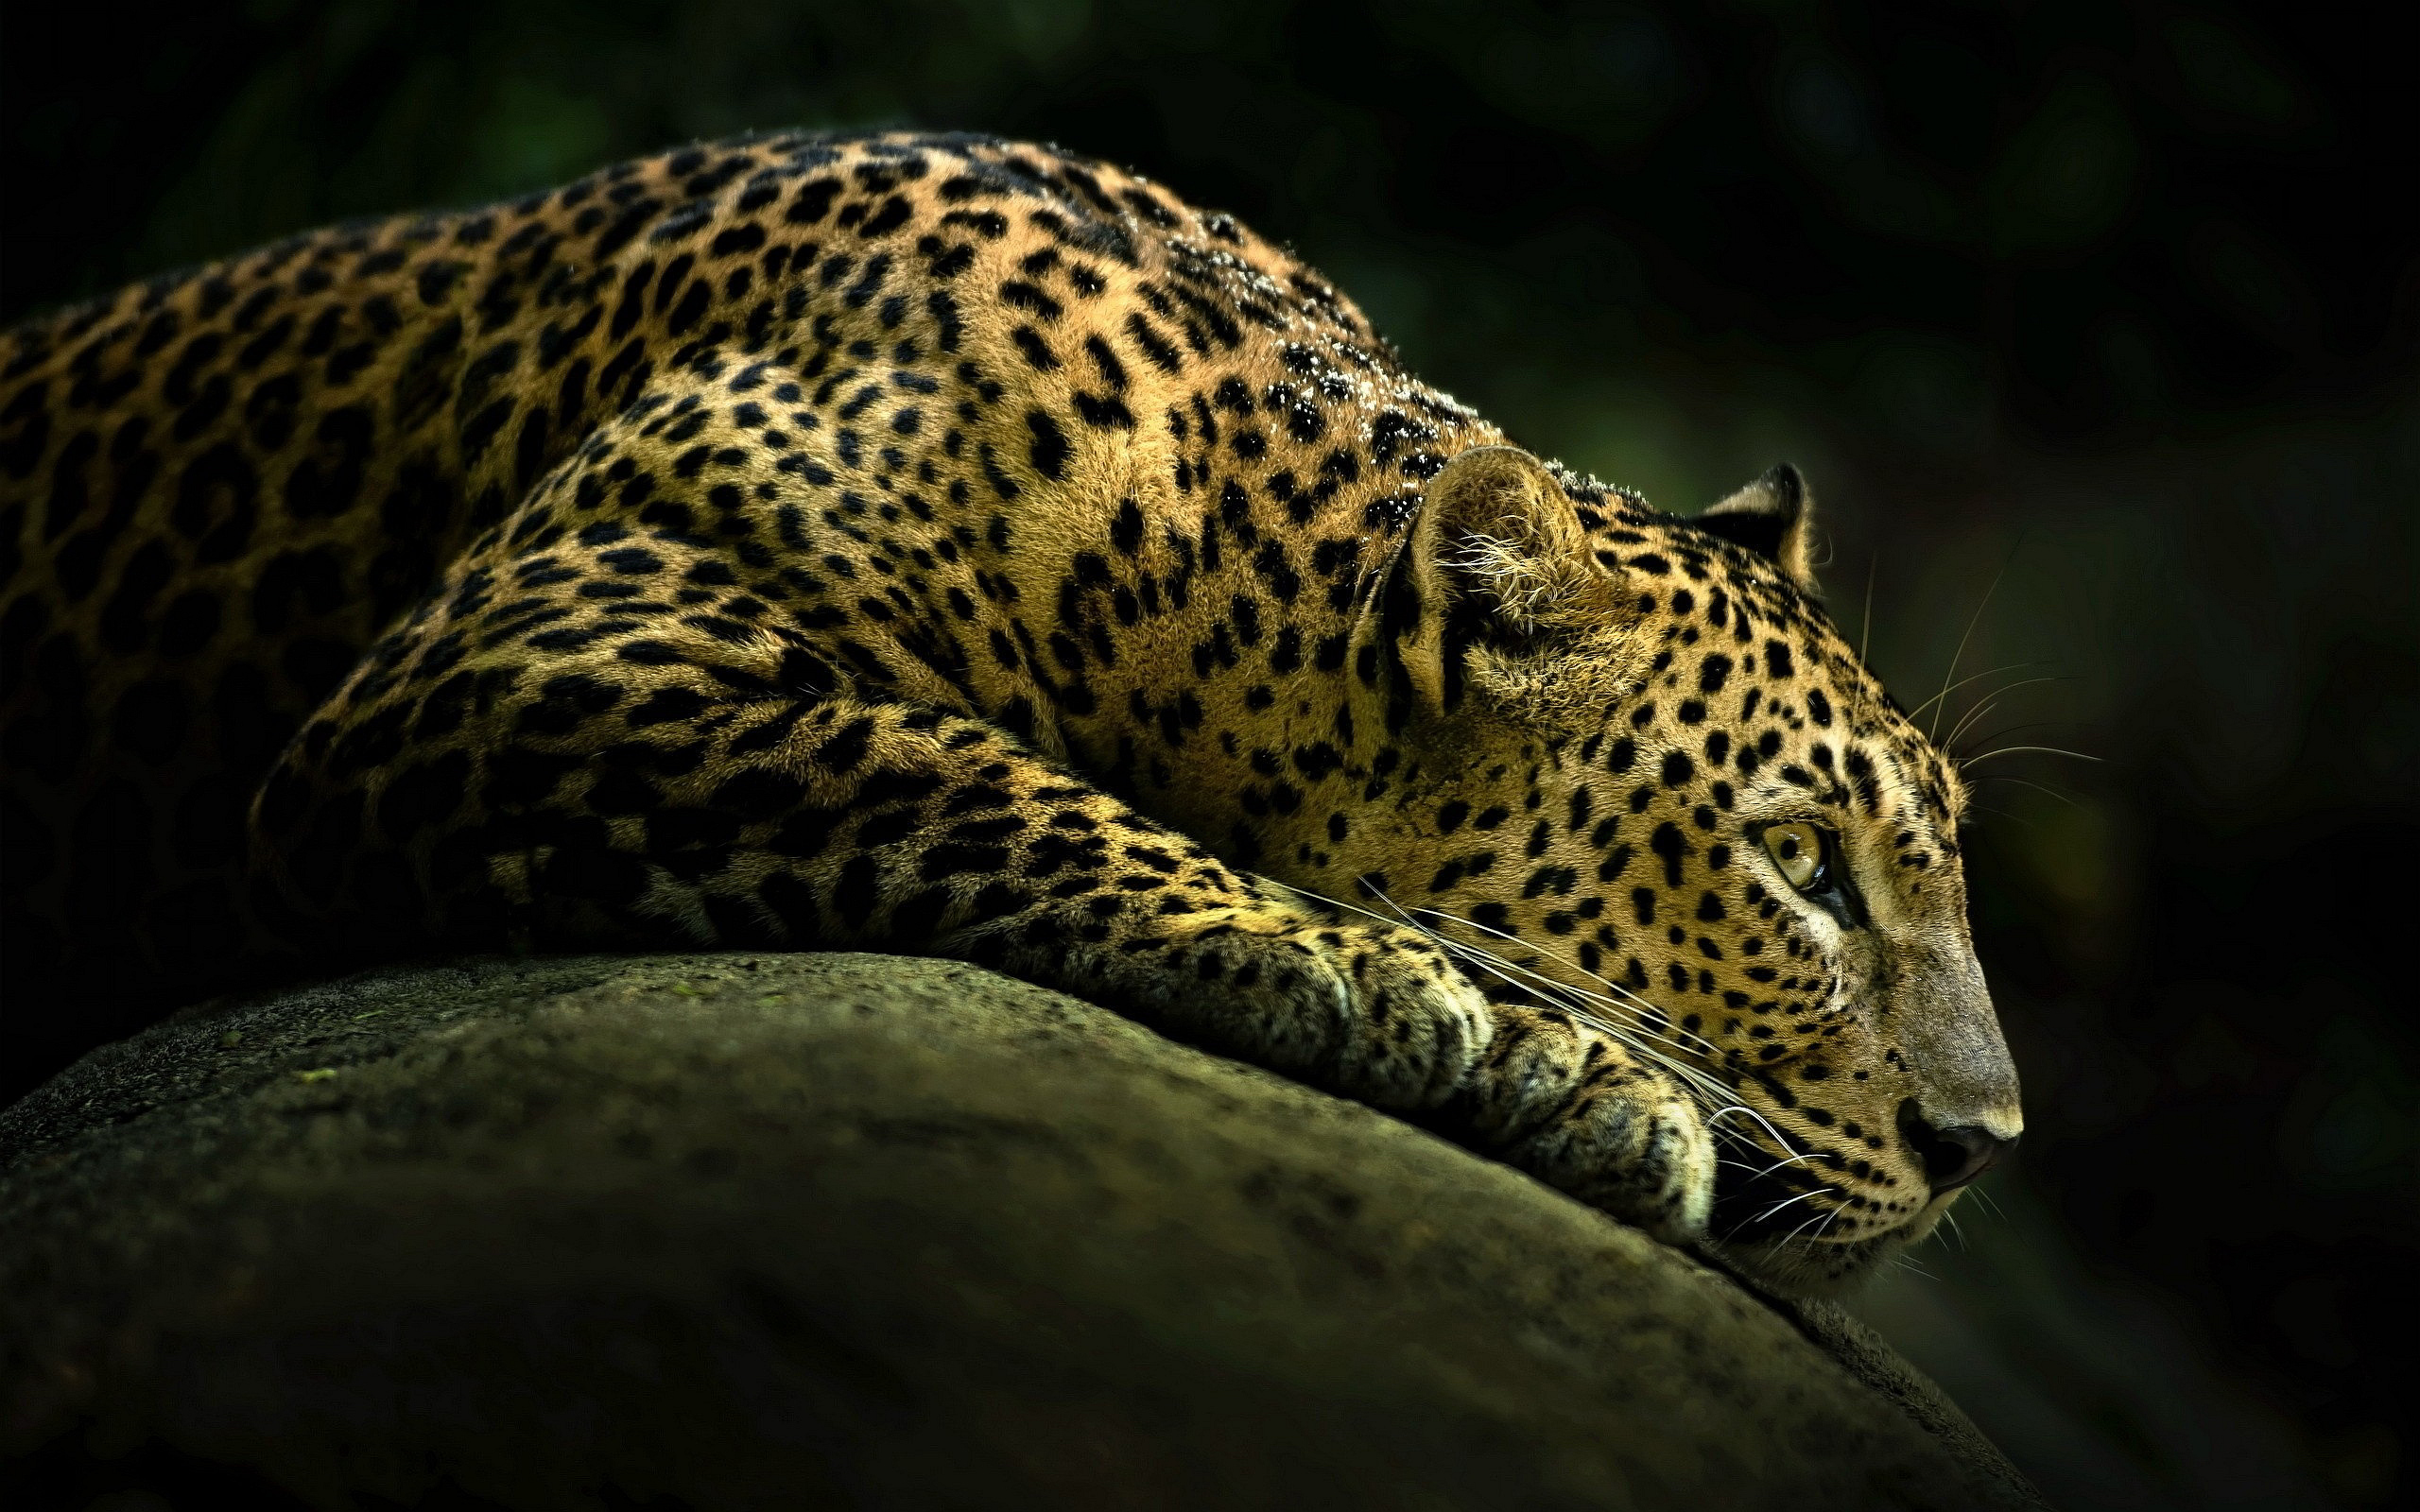 tapete ukuran besar,landtier,tierwelt,leopard,jaguar,felidae